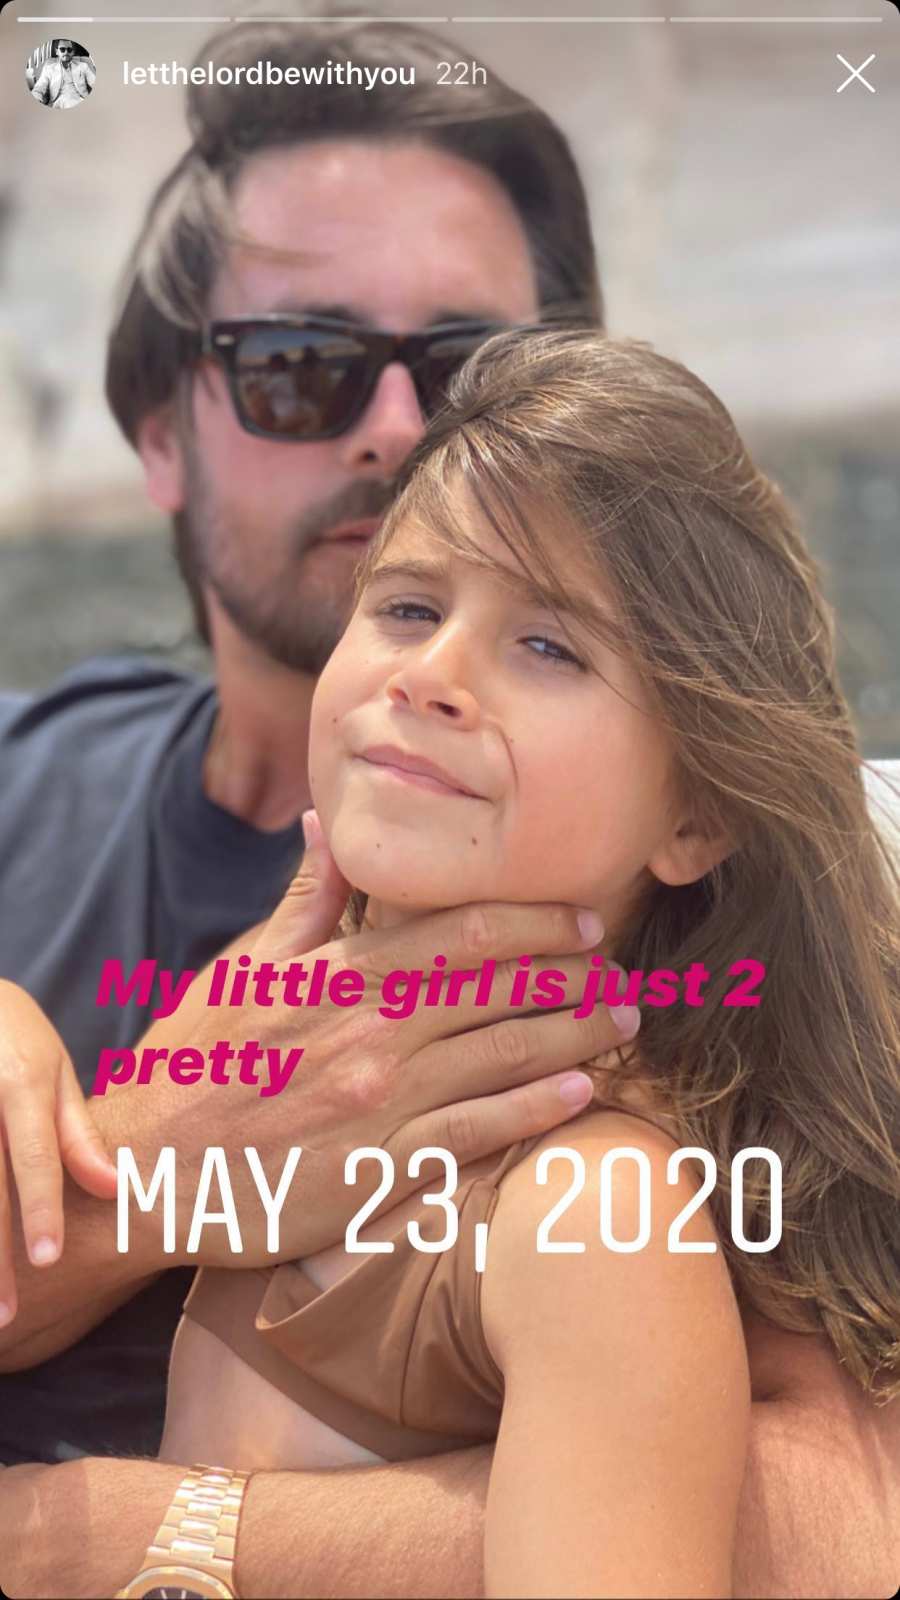 Scott Disick Celebrates 37th Birthday With Kourtney Kardashian and Kids After Sofia Richie Split